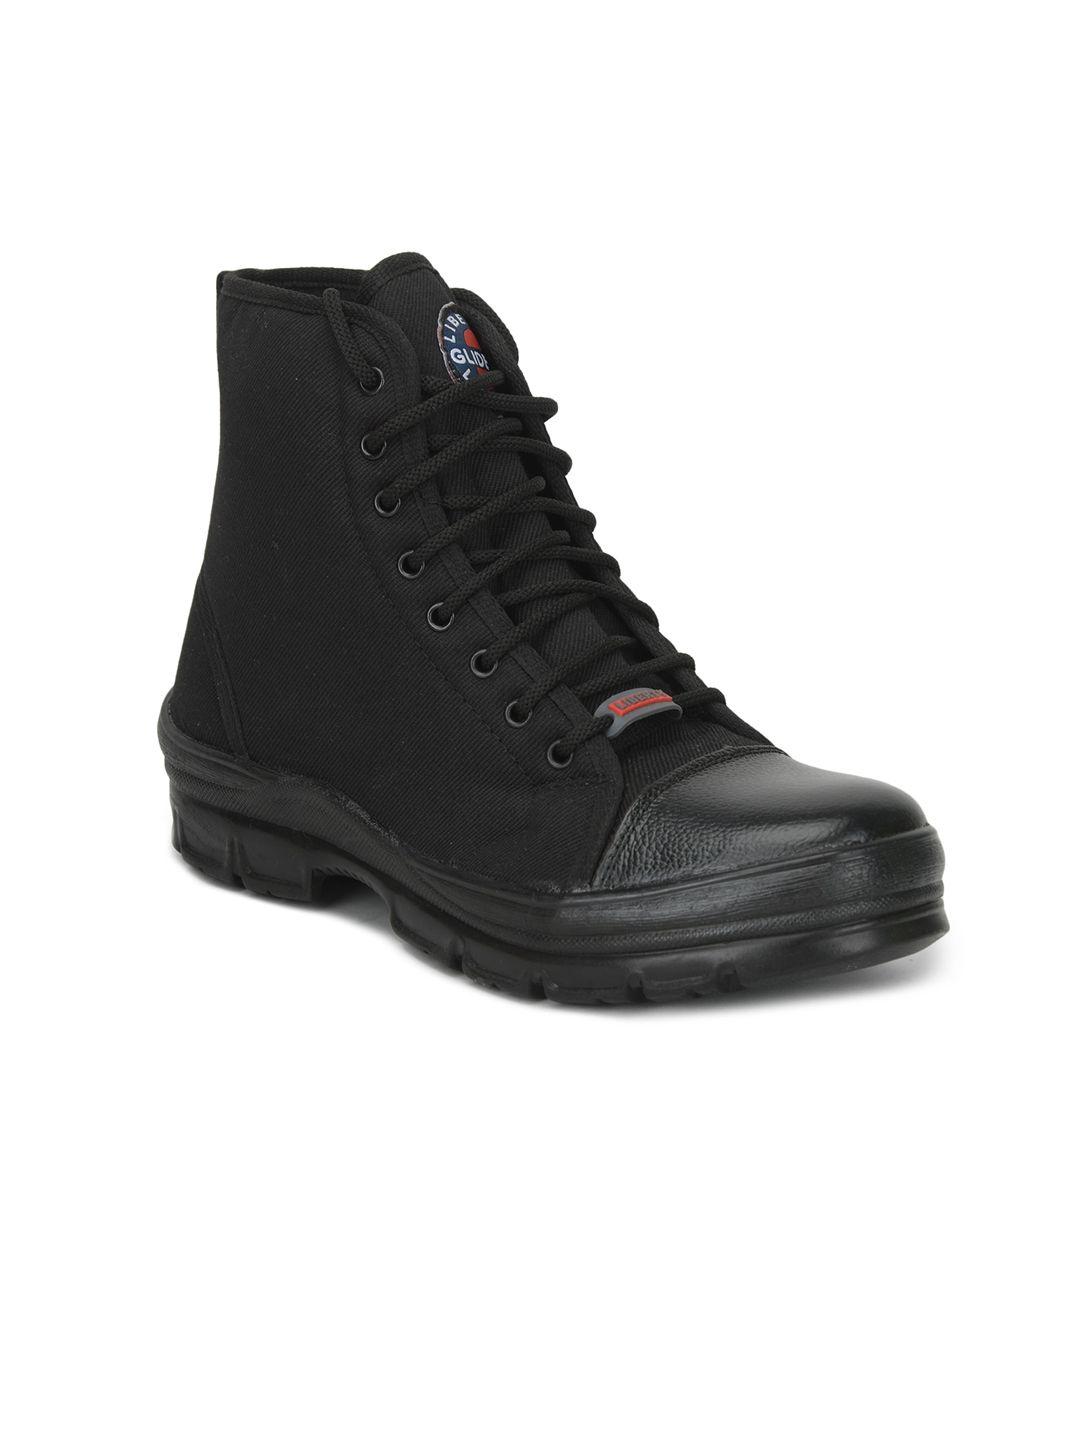 liberty men black flat boots